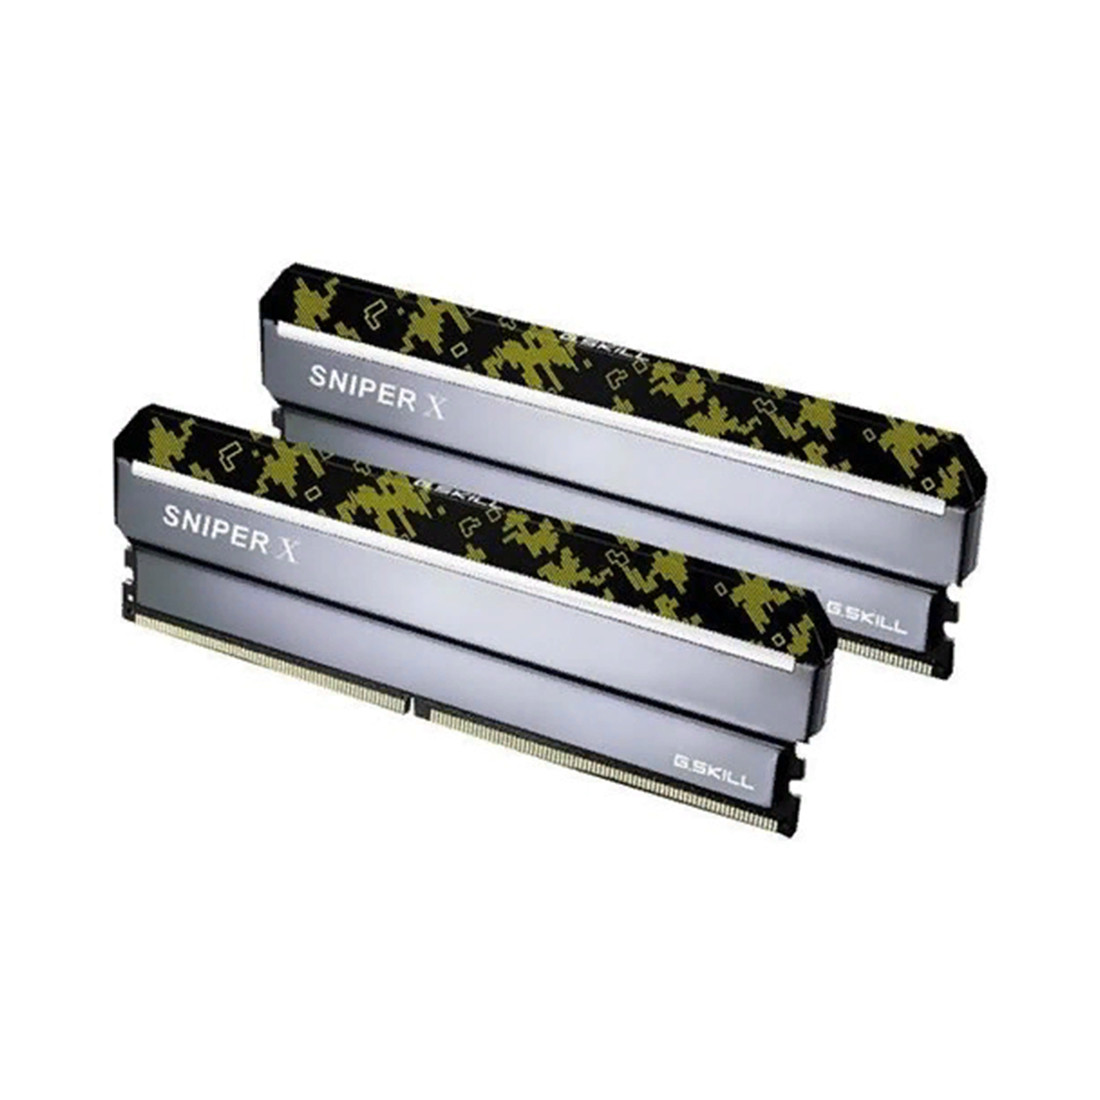 Комплект модулей памяти  G.SKILL  SniperX F4-3200C16D-16GSXKB (Kit 2x8GB)  DDR4  16GB  DIMM   Черный